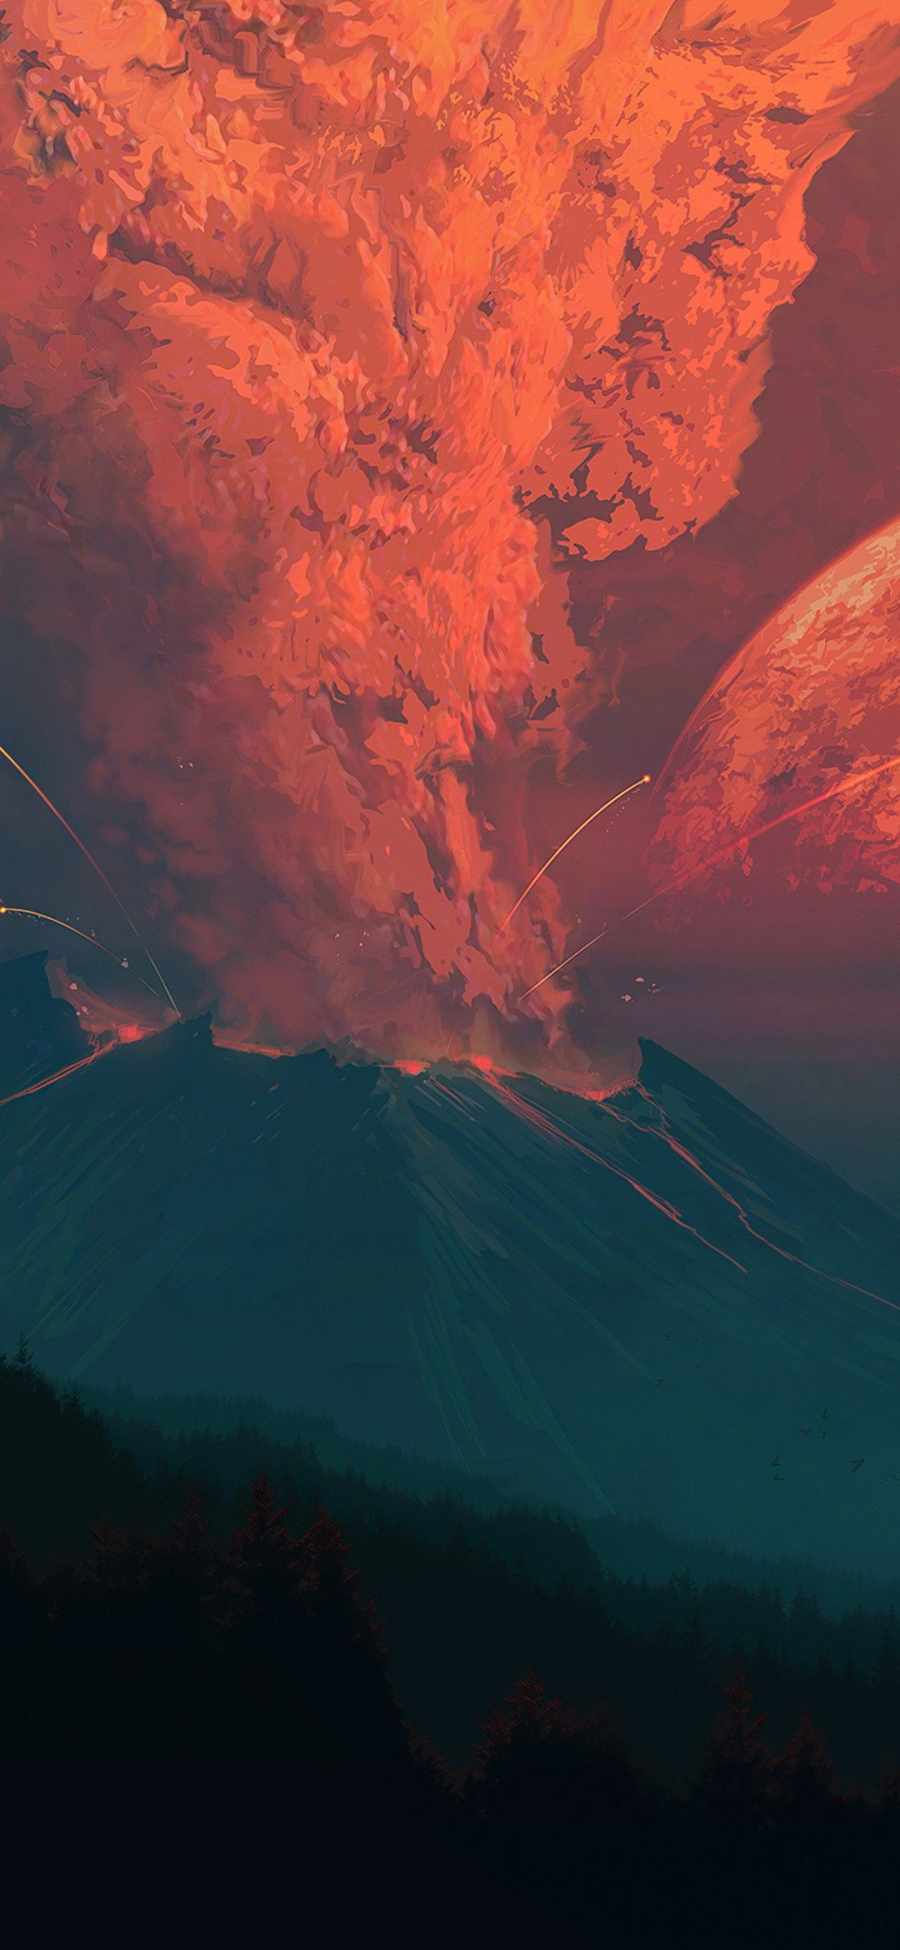 Volcano Blast iPhone Wallpaper